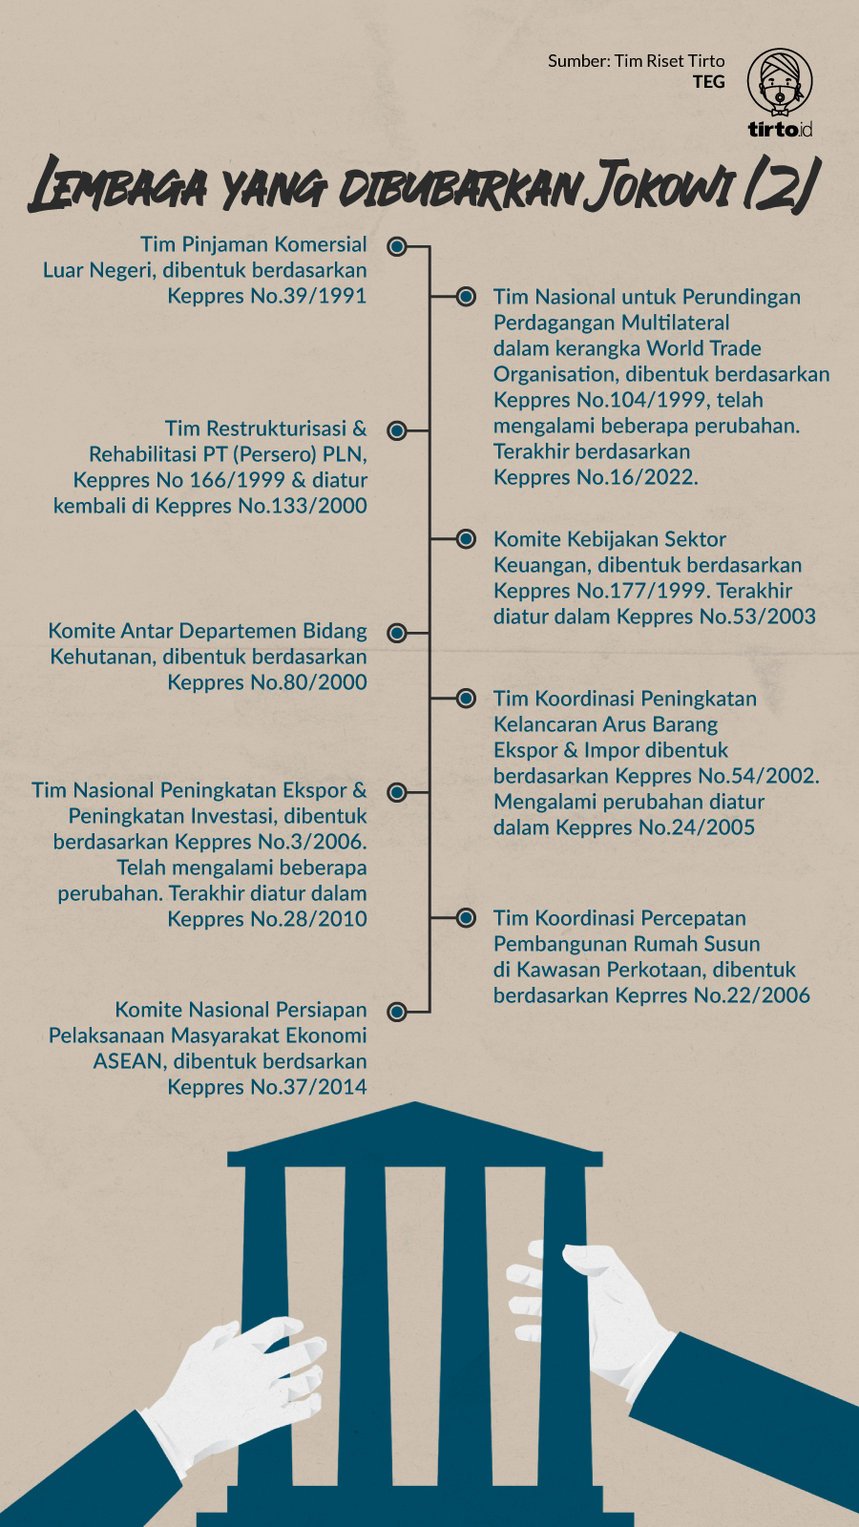 Infografik Lembaga yang dibubarkan Jokowi